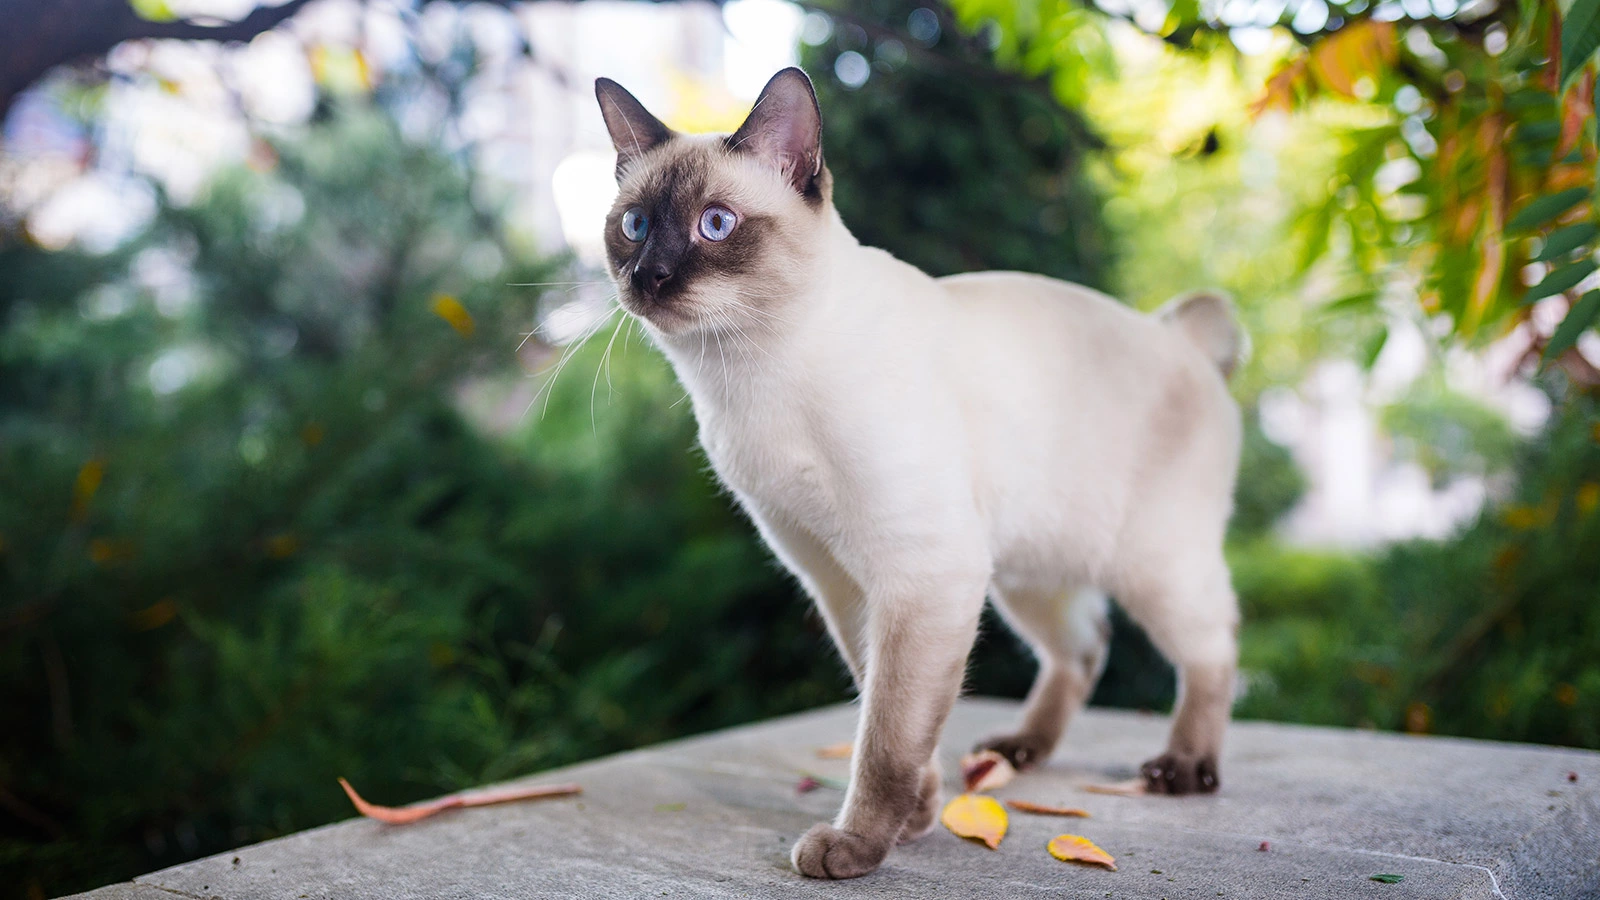 У сиамских кошек несколько разновидностей: от балийской (длинношерстная) и&nbsp;гималайской (выведена путем скрещивания персидской и сиамской кошек) до&nbsp;Сноу-шу (ее окрас на мордочке образует своего рода очки)&nbsp;